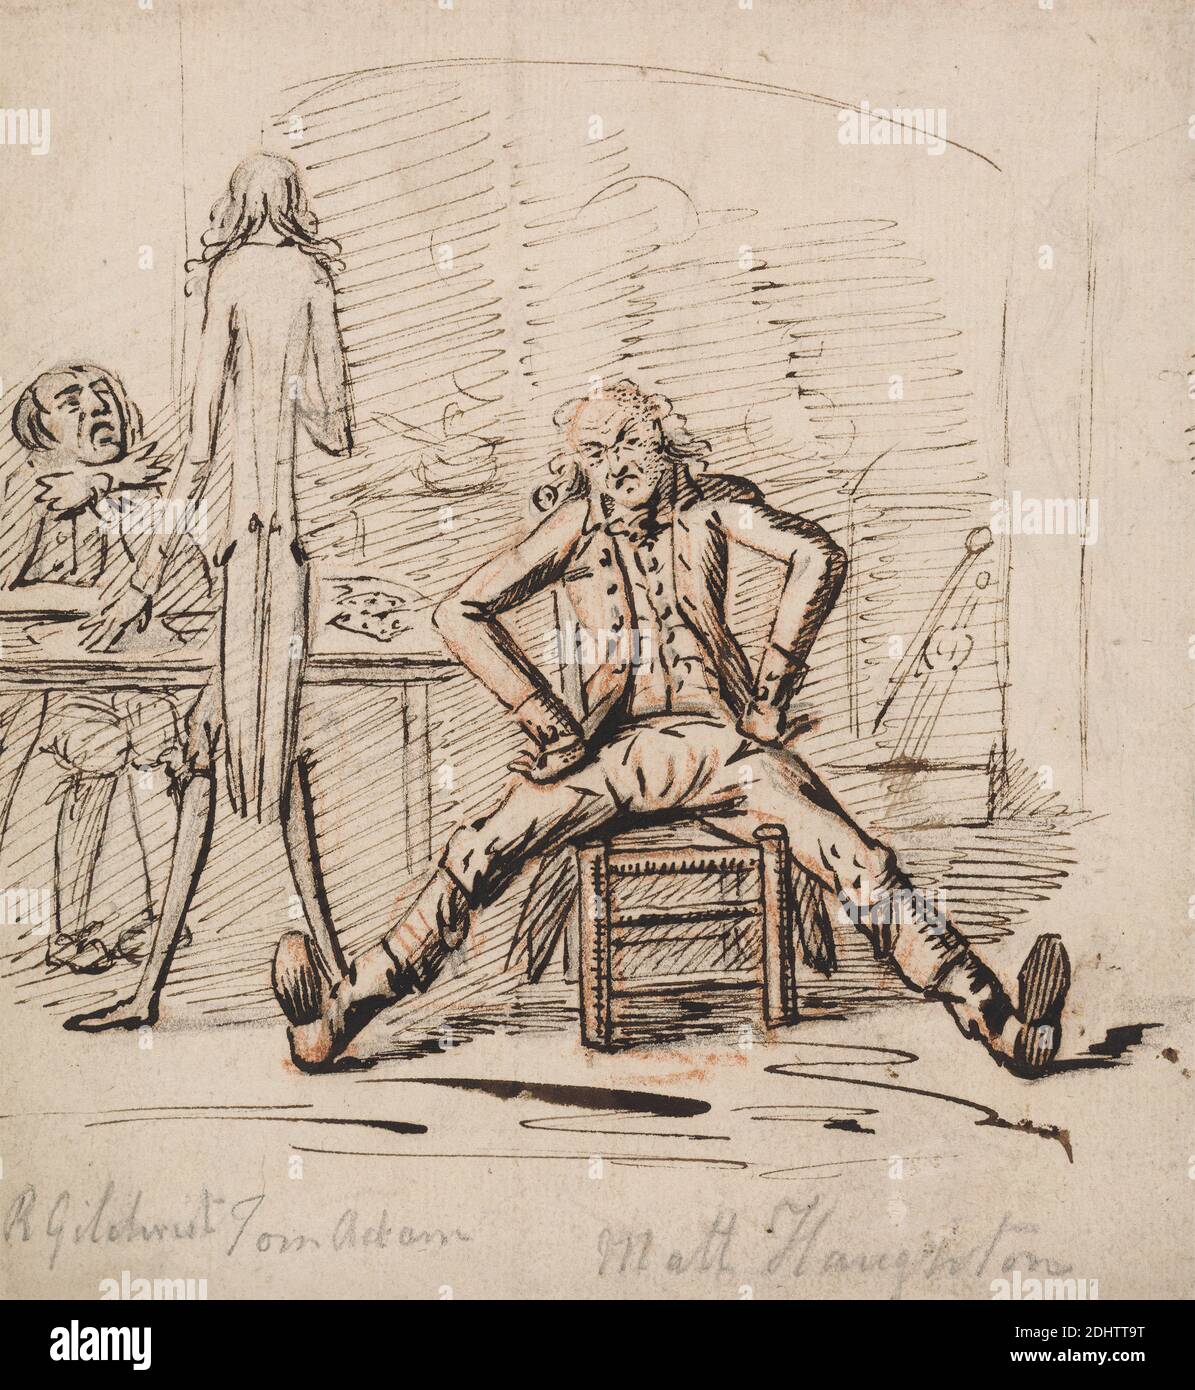 Drei Männer in einem Raum: Gilchrist an einem Tisch sitzend, Tom Adam stehend, von hinten gesehen, und Matt Haughton sitzende Beine ausgebreitet und Arme Akimbo vor einem Feuer, George Shepheard, ca. 1770–1842, britisch, undatiert, schwarze Tinte, braune Tinte, Graphit und rote Kreide auf Medium, leicht strukturiert, cremefarbenes Papier, Blatt: 6 7/8 × 6 1/4 Zoll (17.5 × 15.9 cm), Stuhl, Feuer, Genremotiv, Innenraum (Raum), Tisch, Zange, Feuer Stockfoto